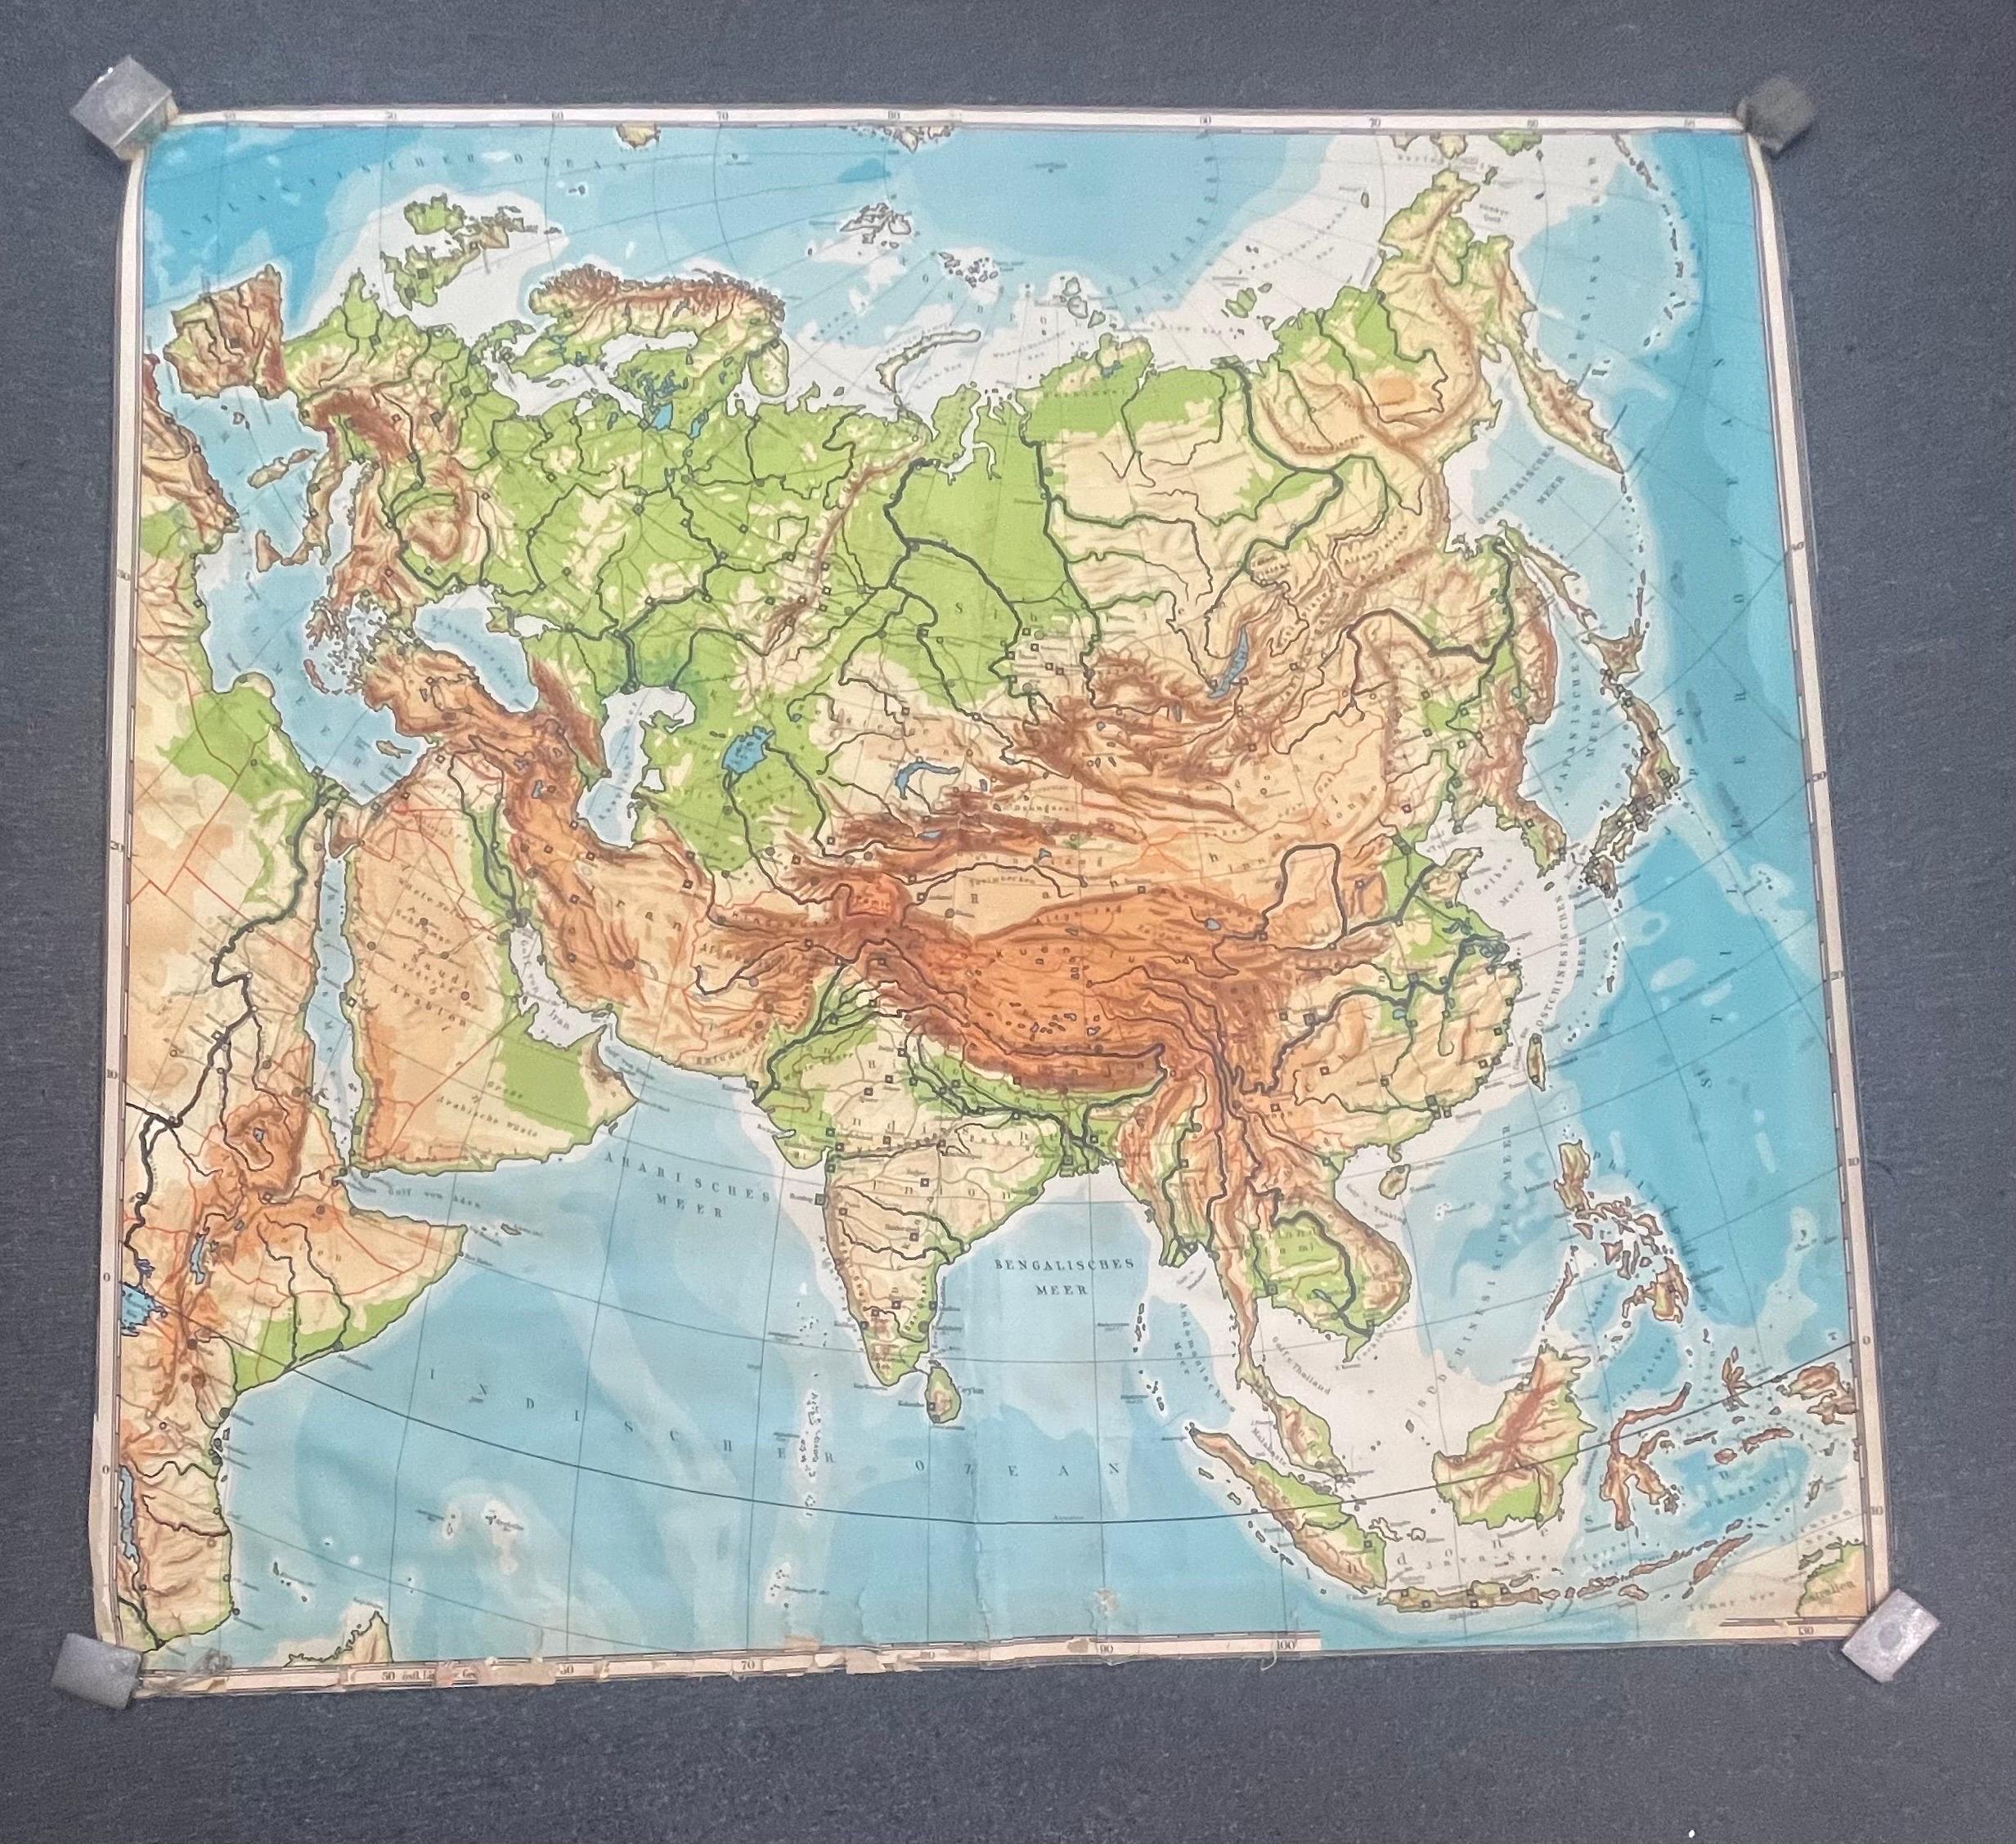 Eine riesige Europa- und Asien-Wandkarte, ca. 1950er Jahre. Die Karte ist in einem guten Zustand und misst 78 